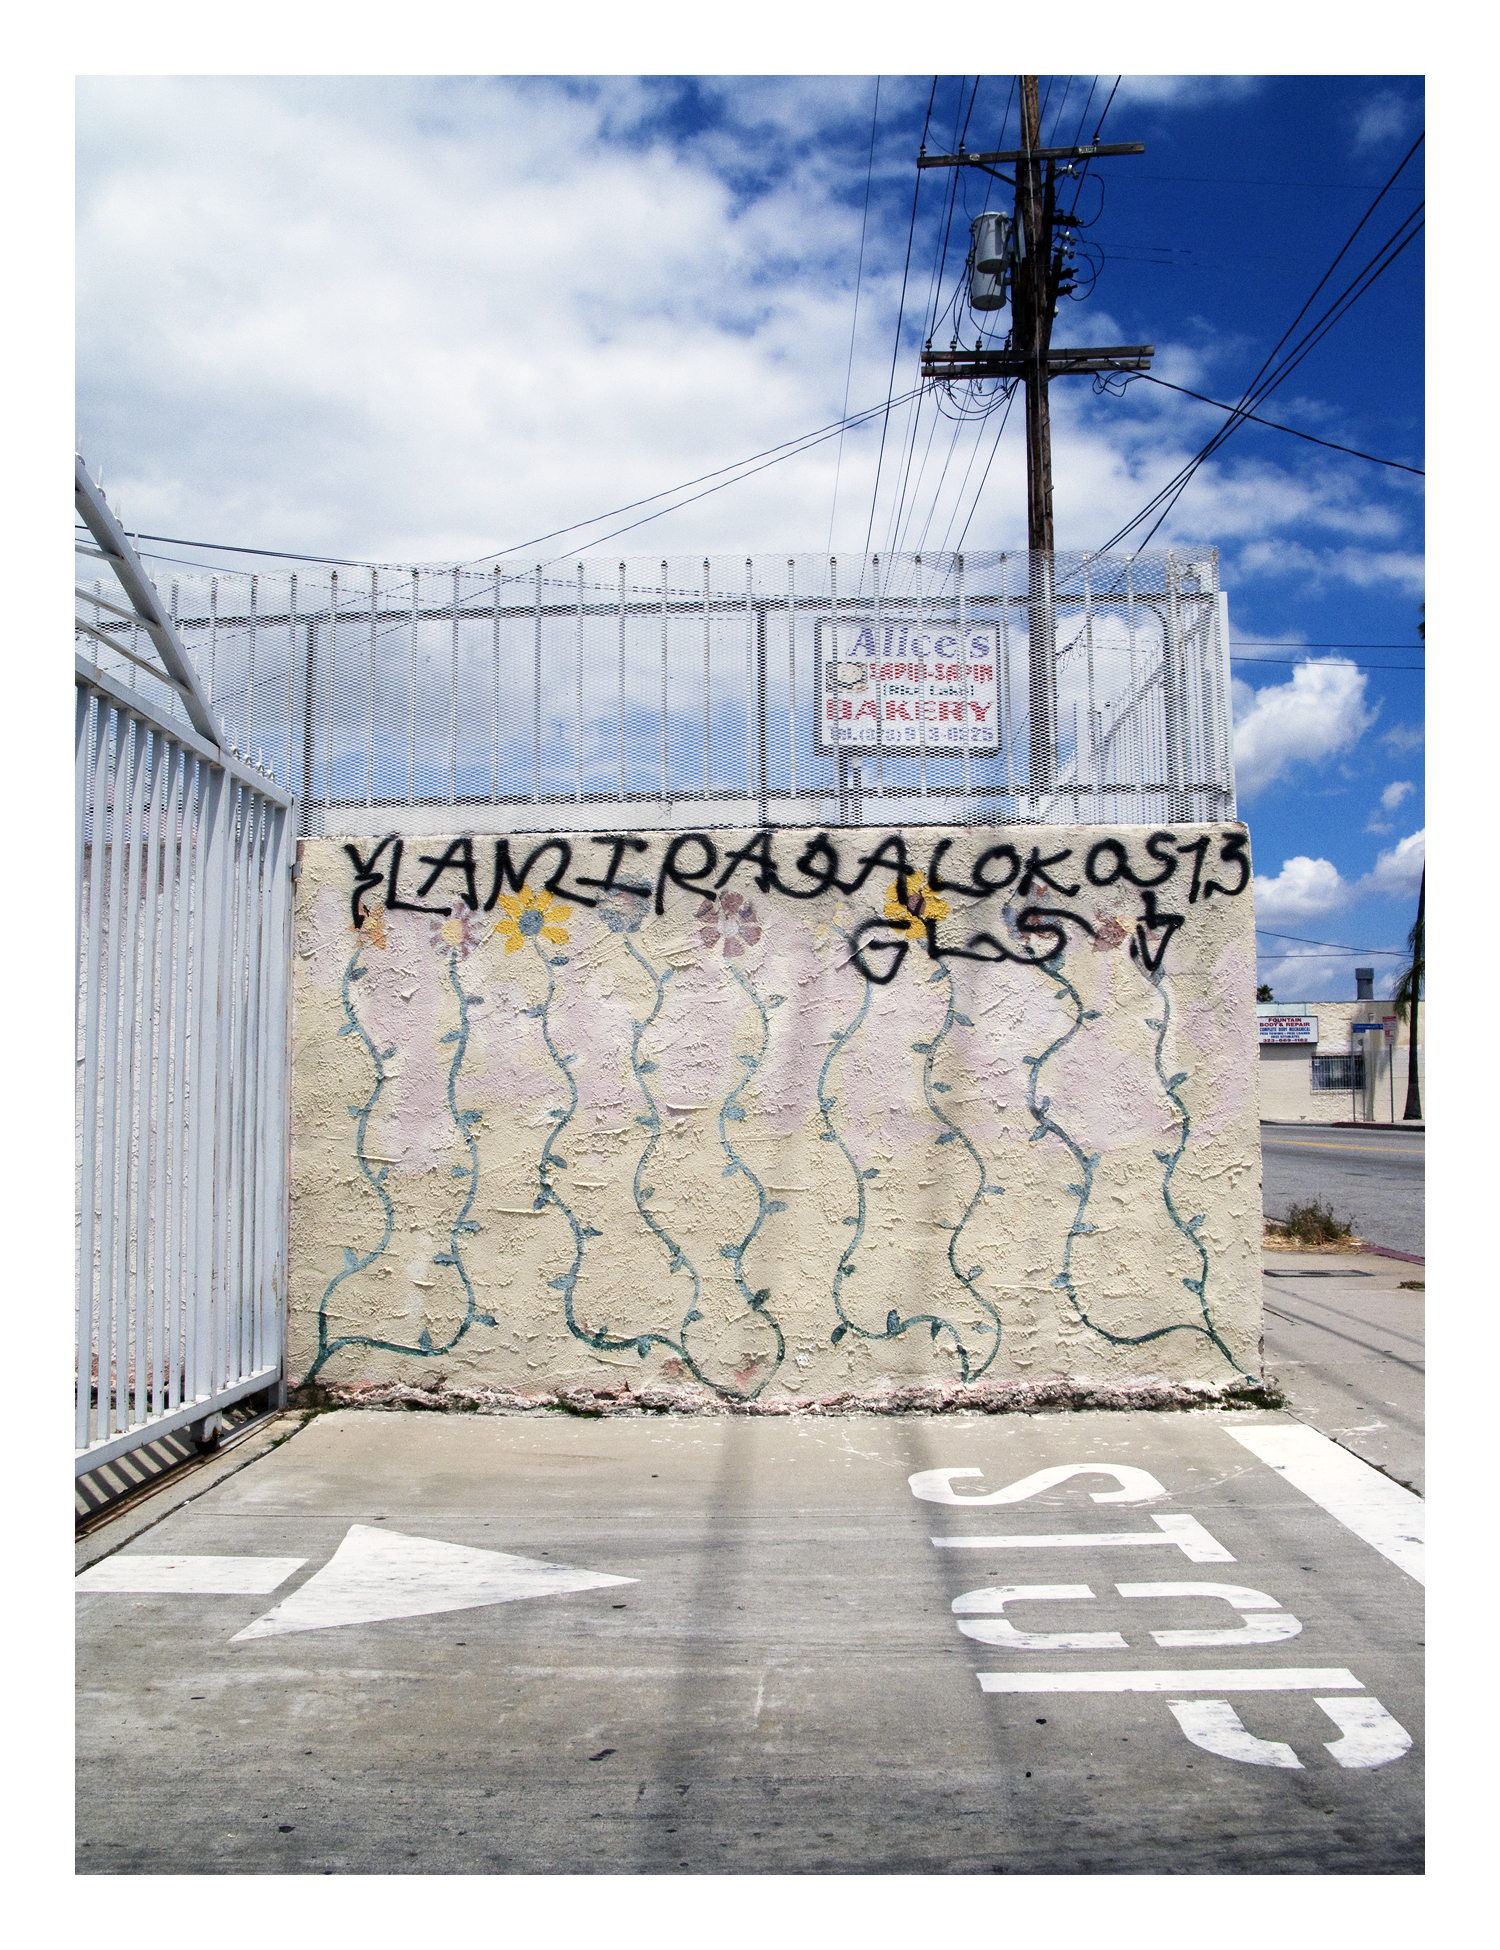 La Gang Graffiti - KibrisPDR